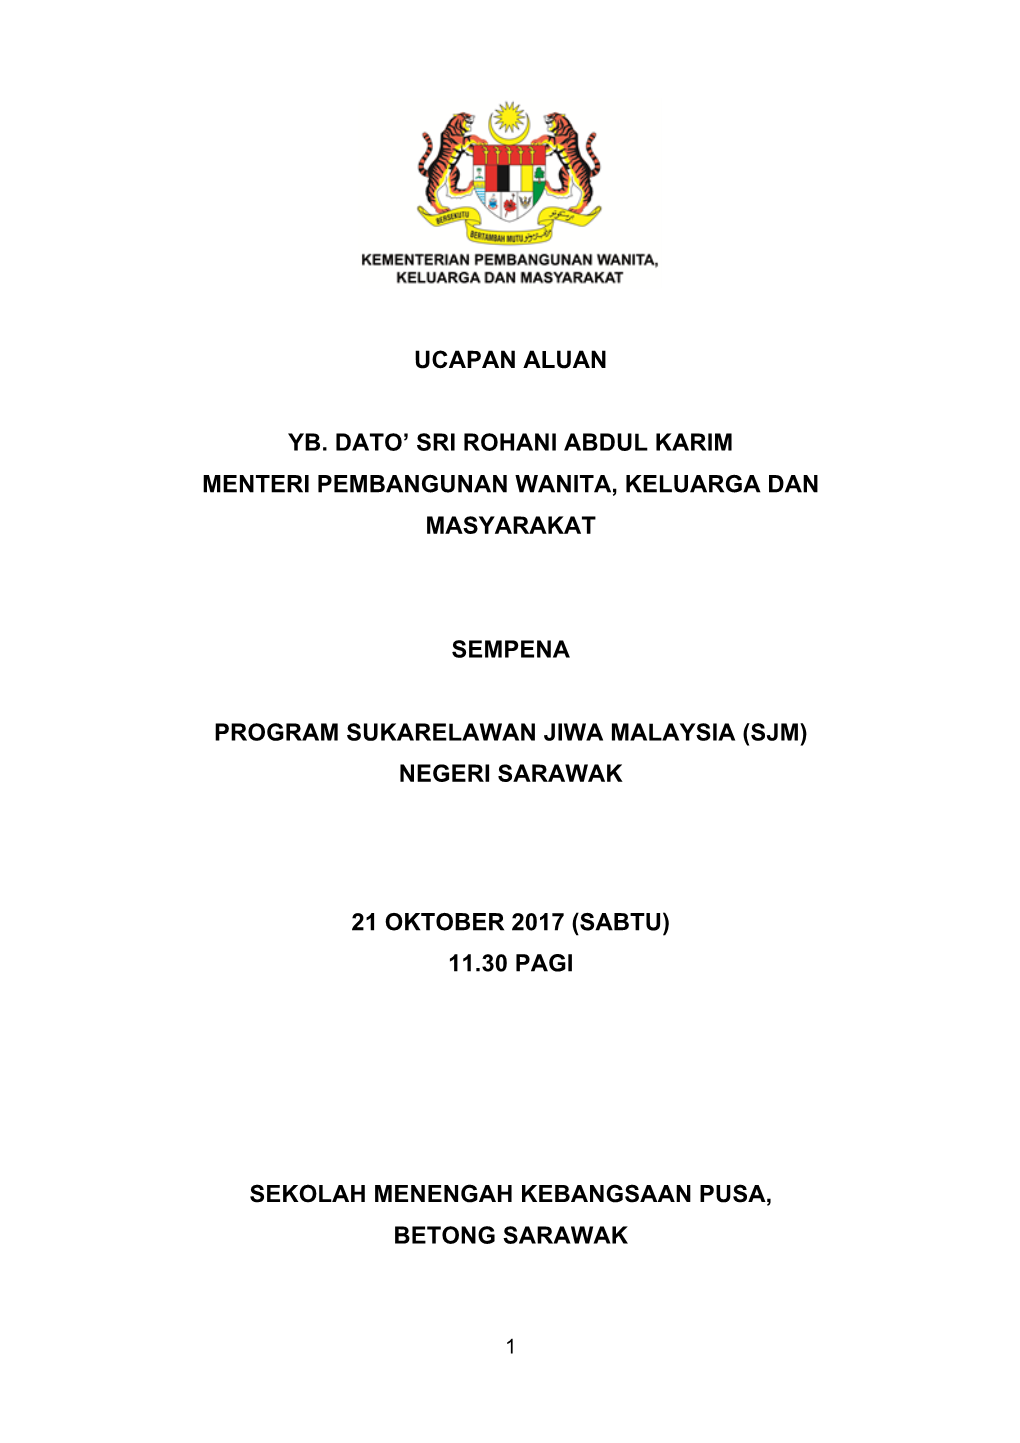 Program Sukarelawan Jiwa Malaysia (Sjm) Negeri Sarawak